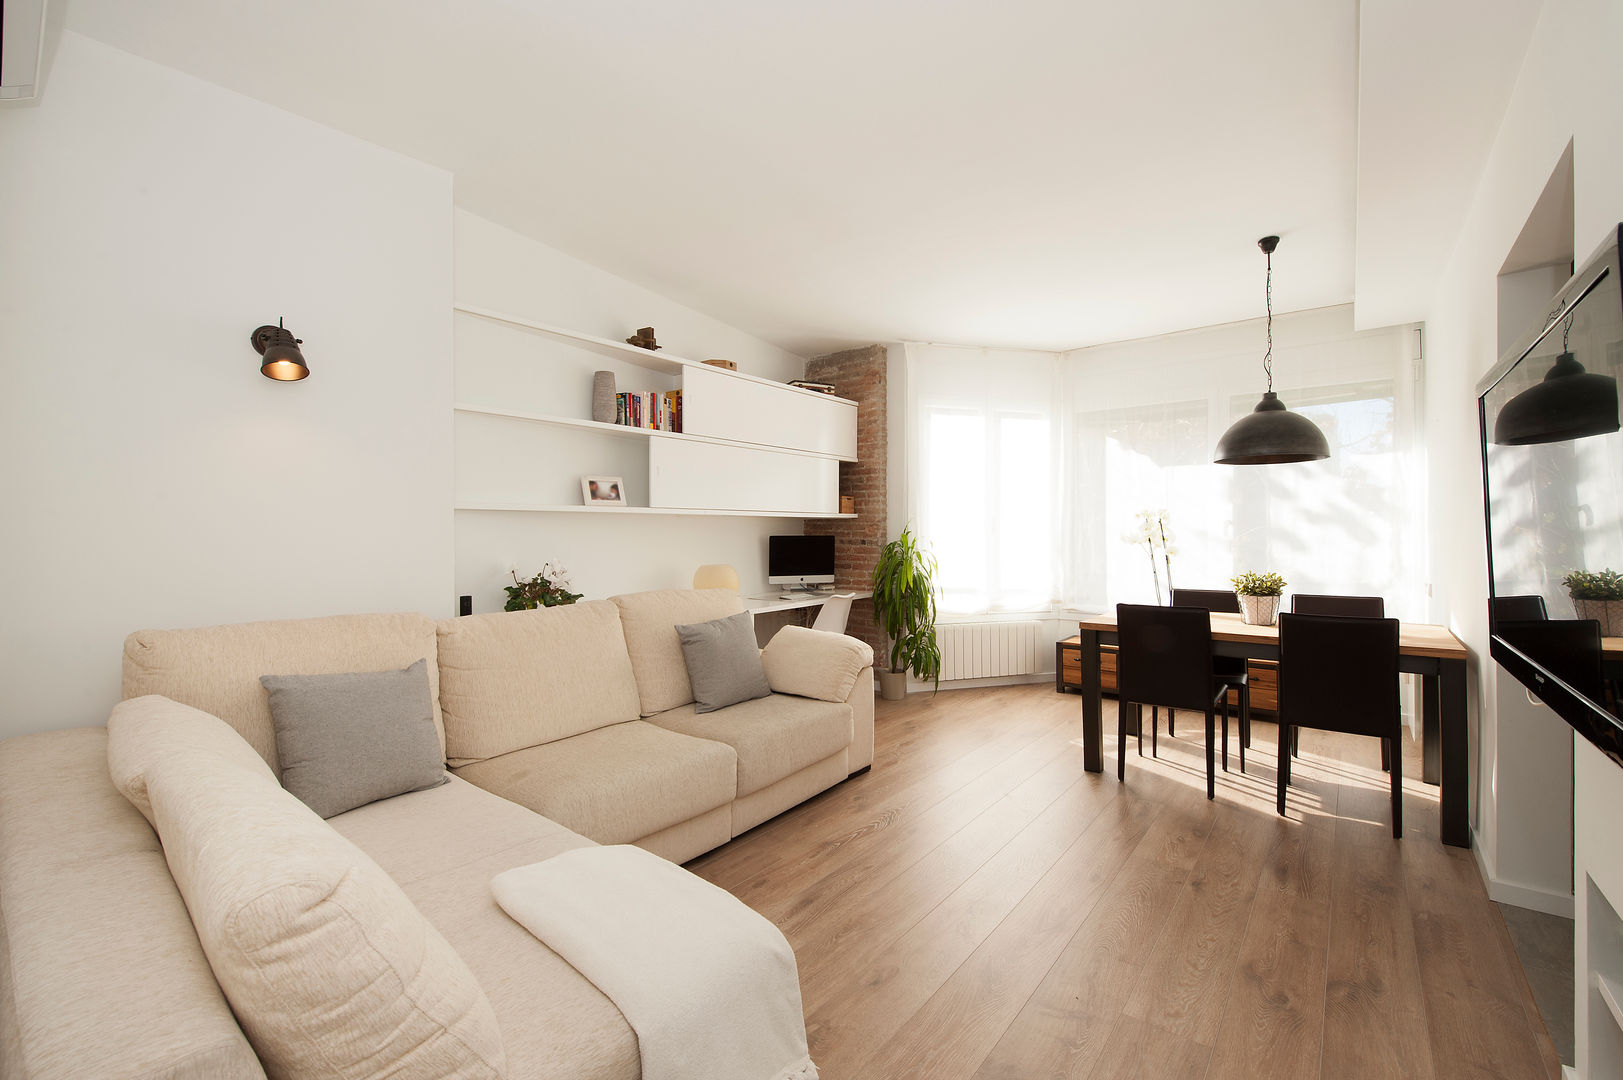 Überraschende Renovierung einer Wohnung auf 20 m²   homify